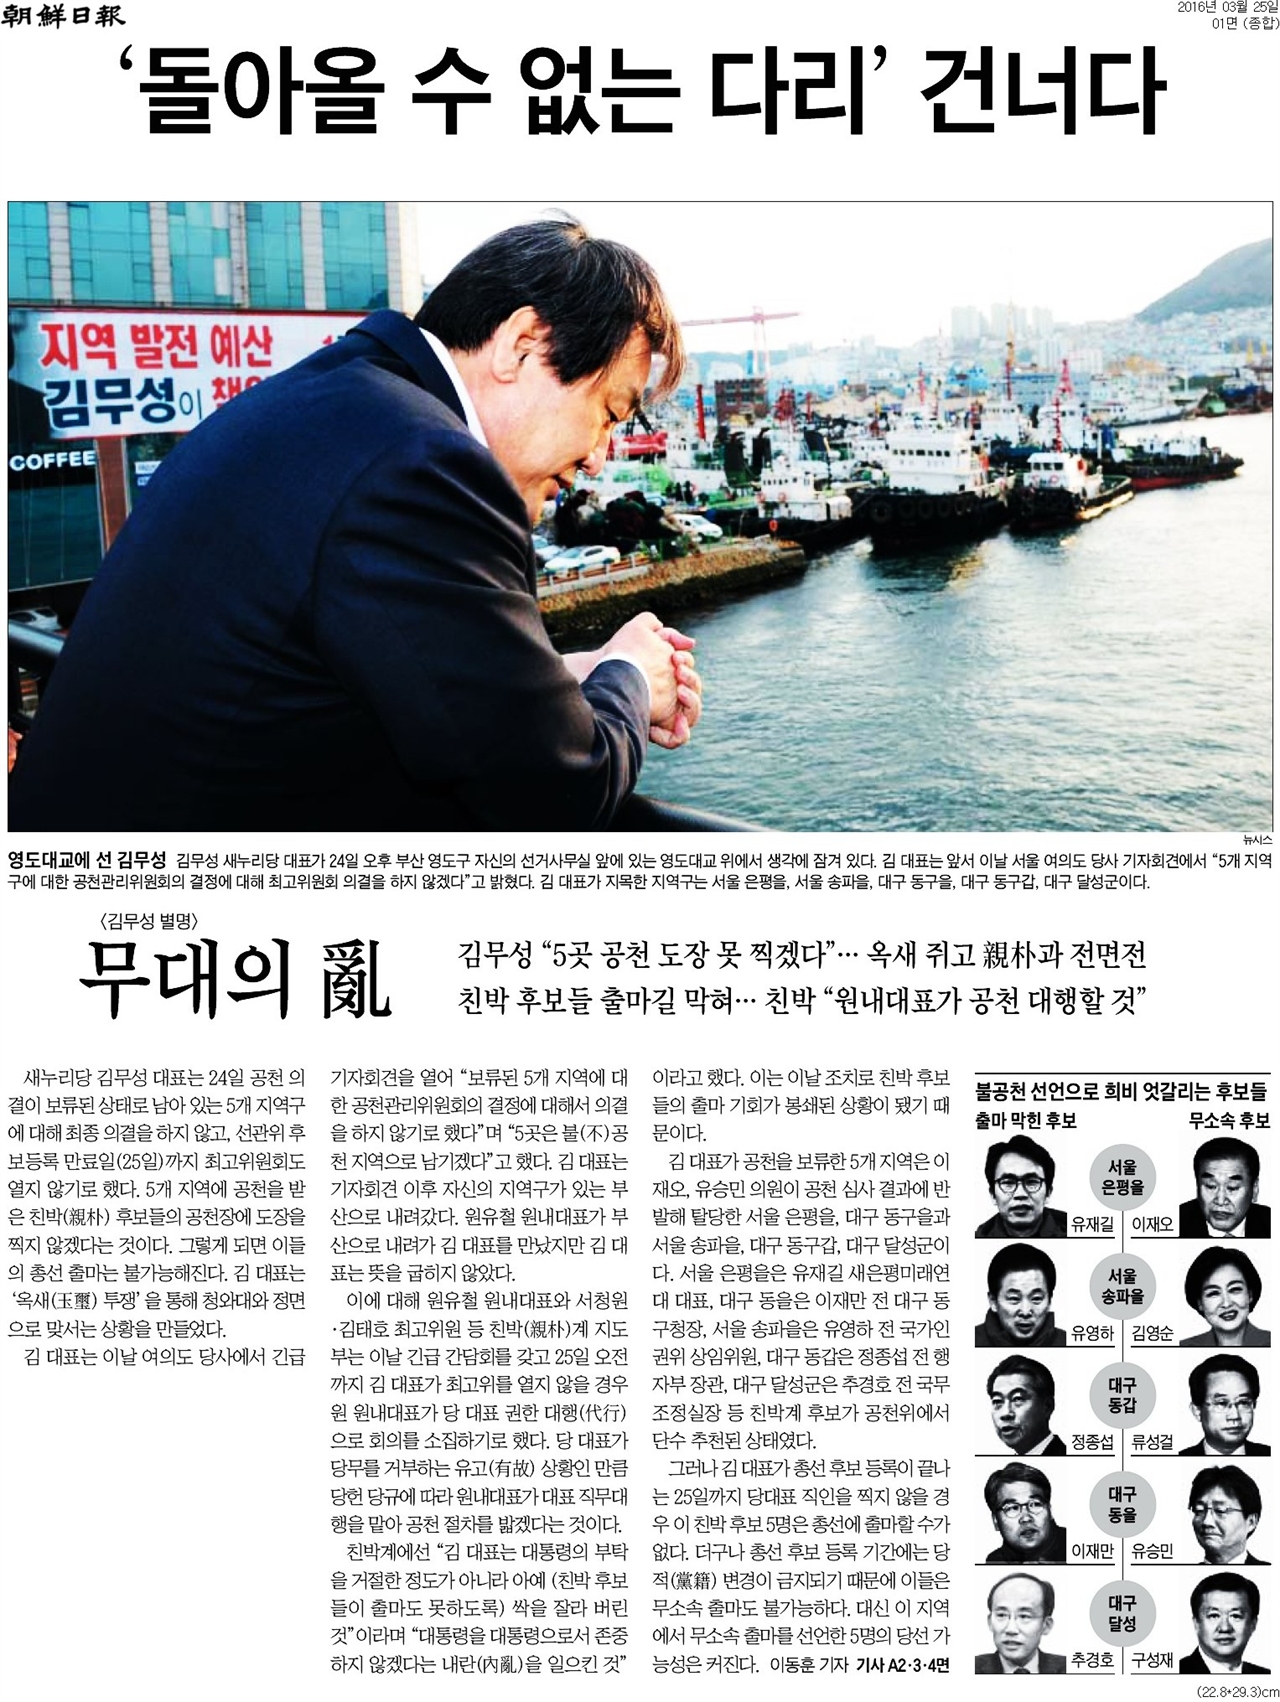 새누리당 김무성 대표의 '영도다리 고뇌'를 전한 <조선일보> 보도 갈무리